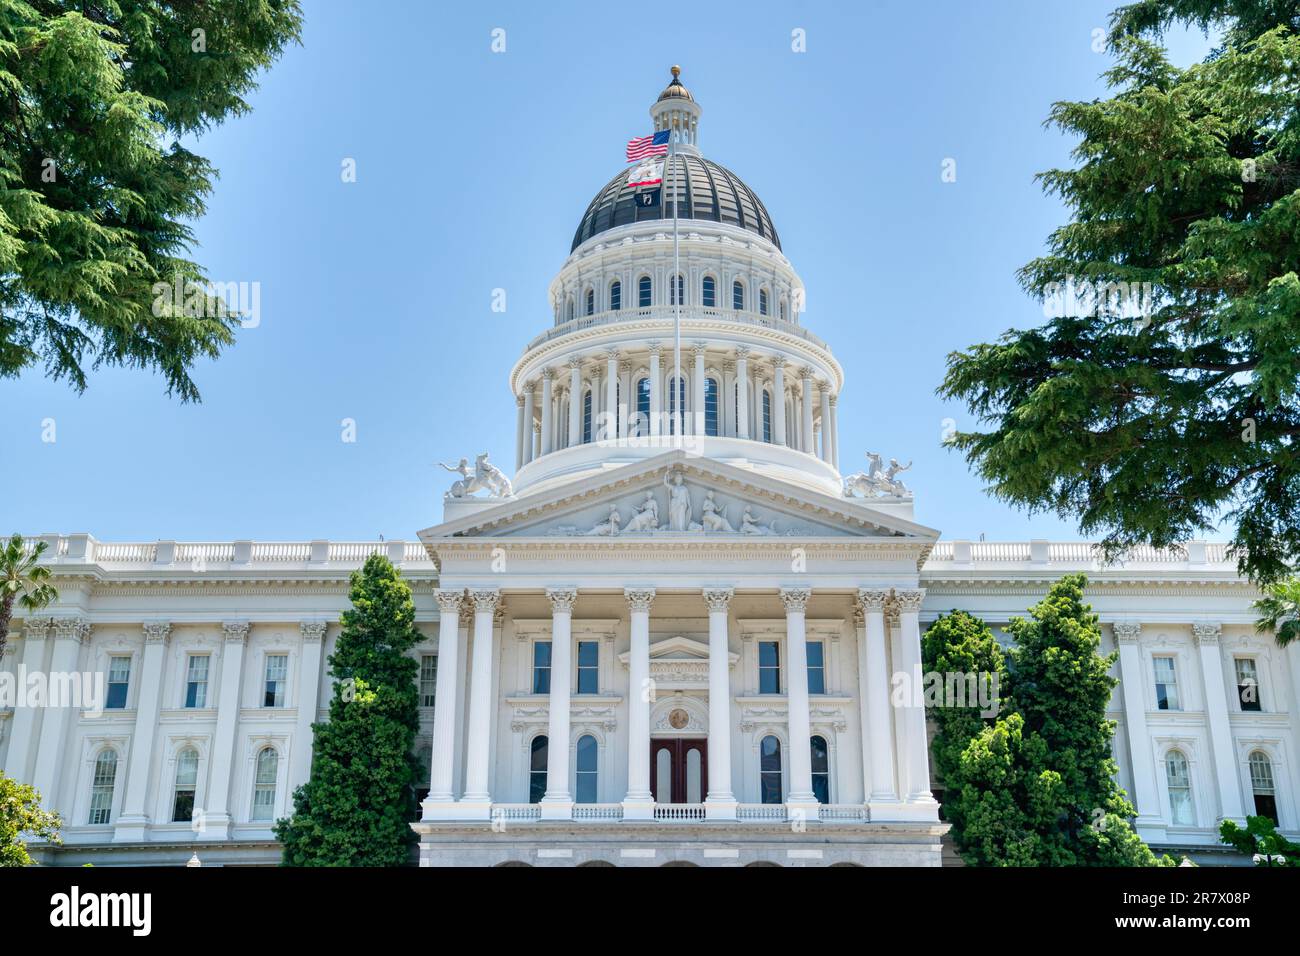 Exterior facade of the California State Capitol Building in Sacramento Stock Photo